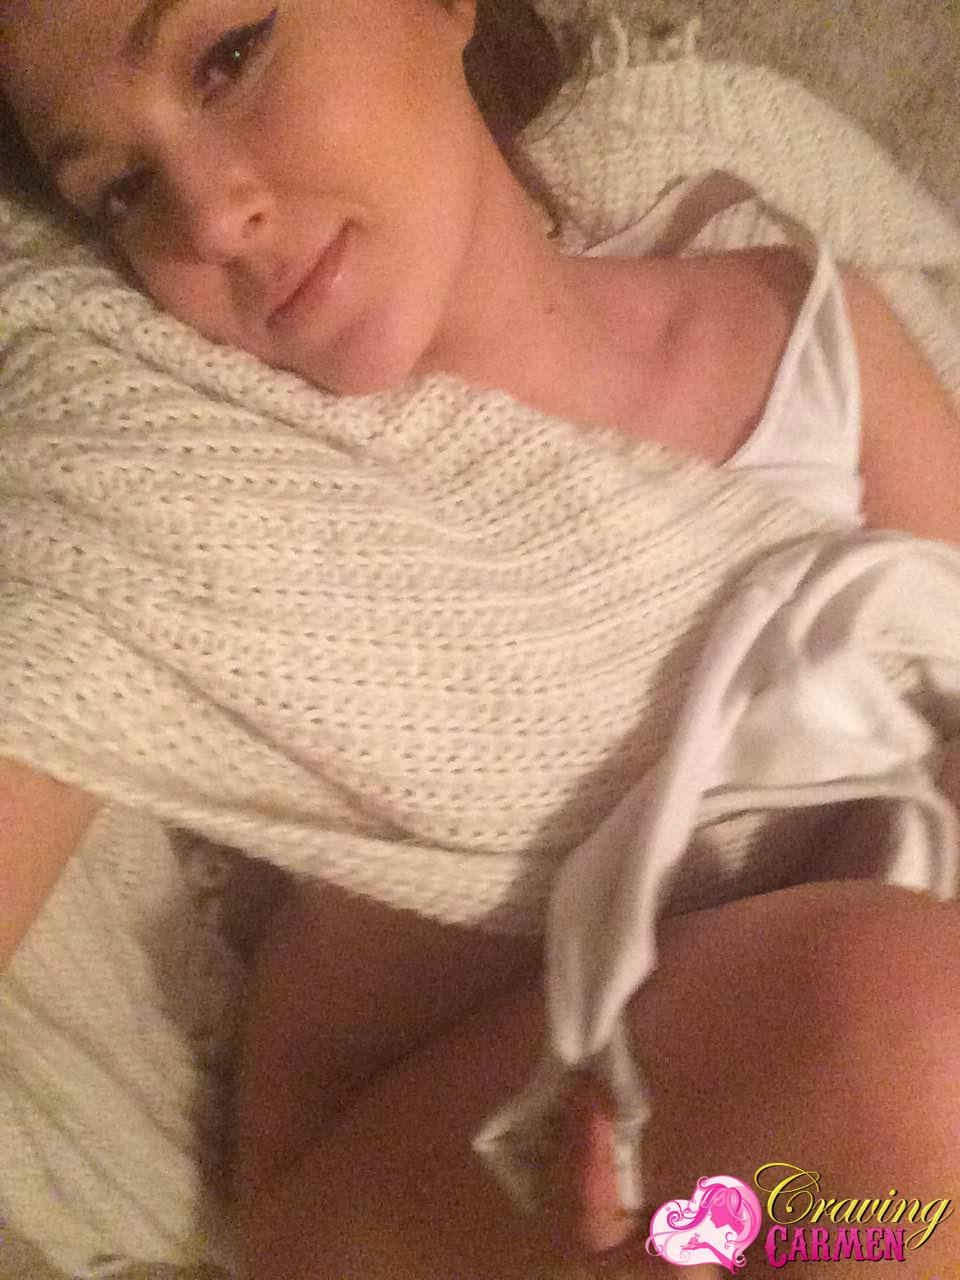 Craving carmen si spoglia e si fa dei selfies a letto
 #53874527